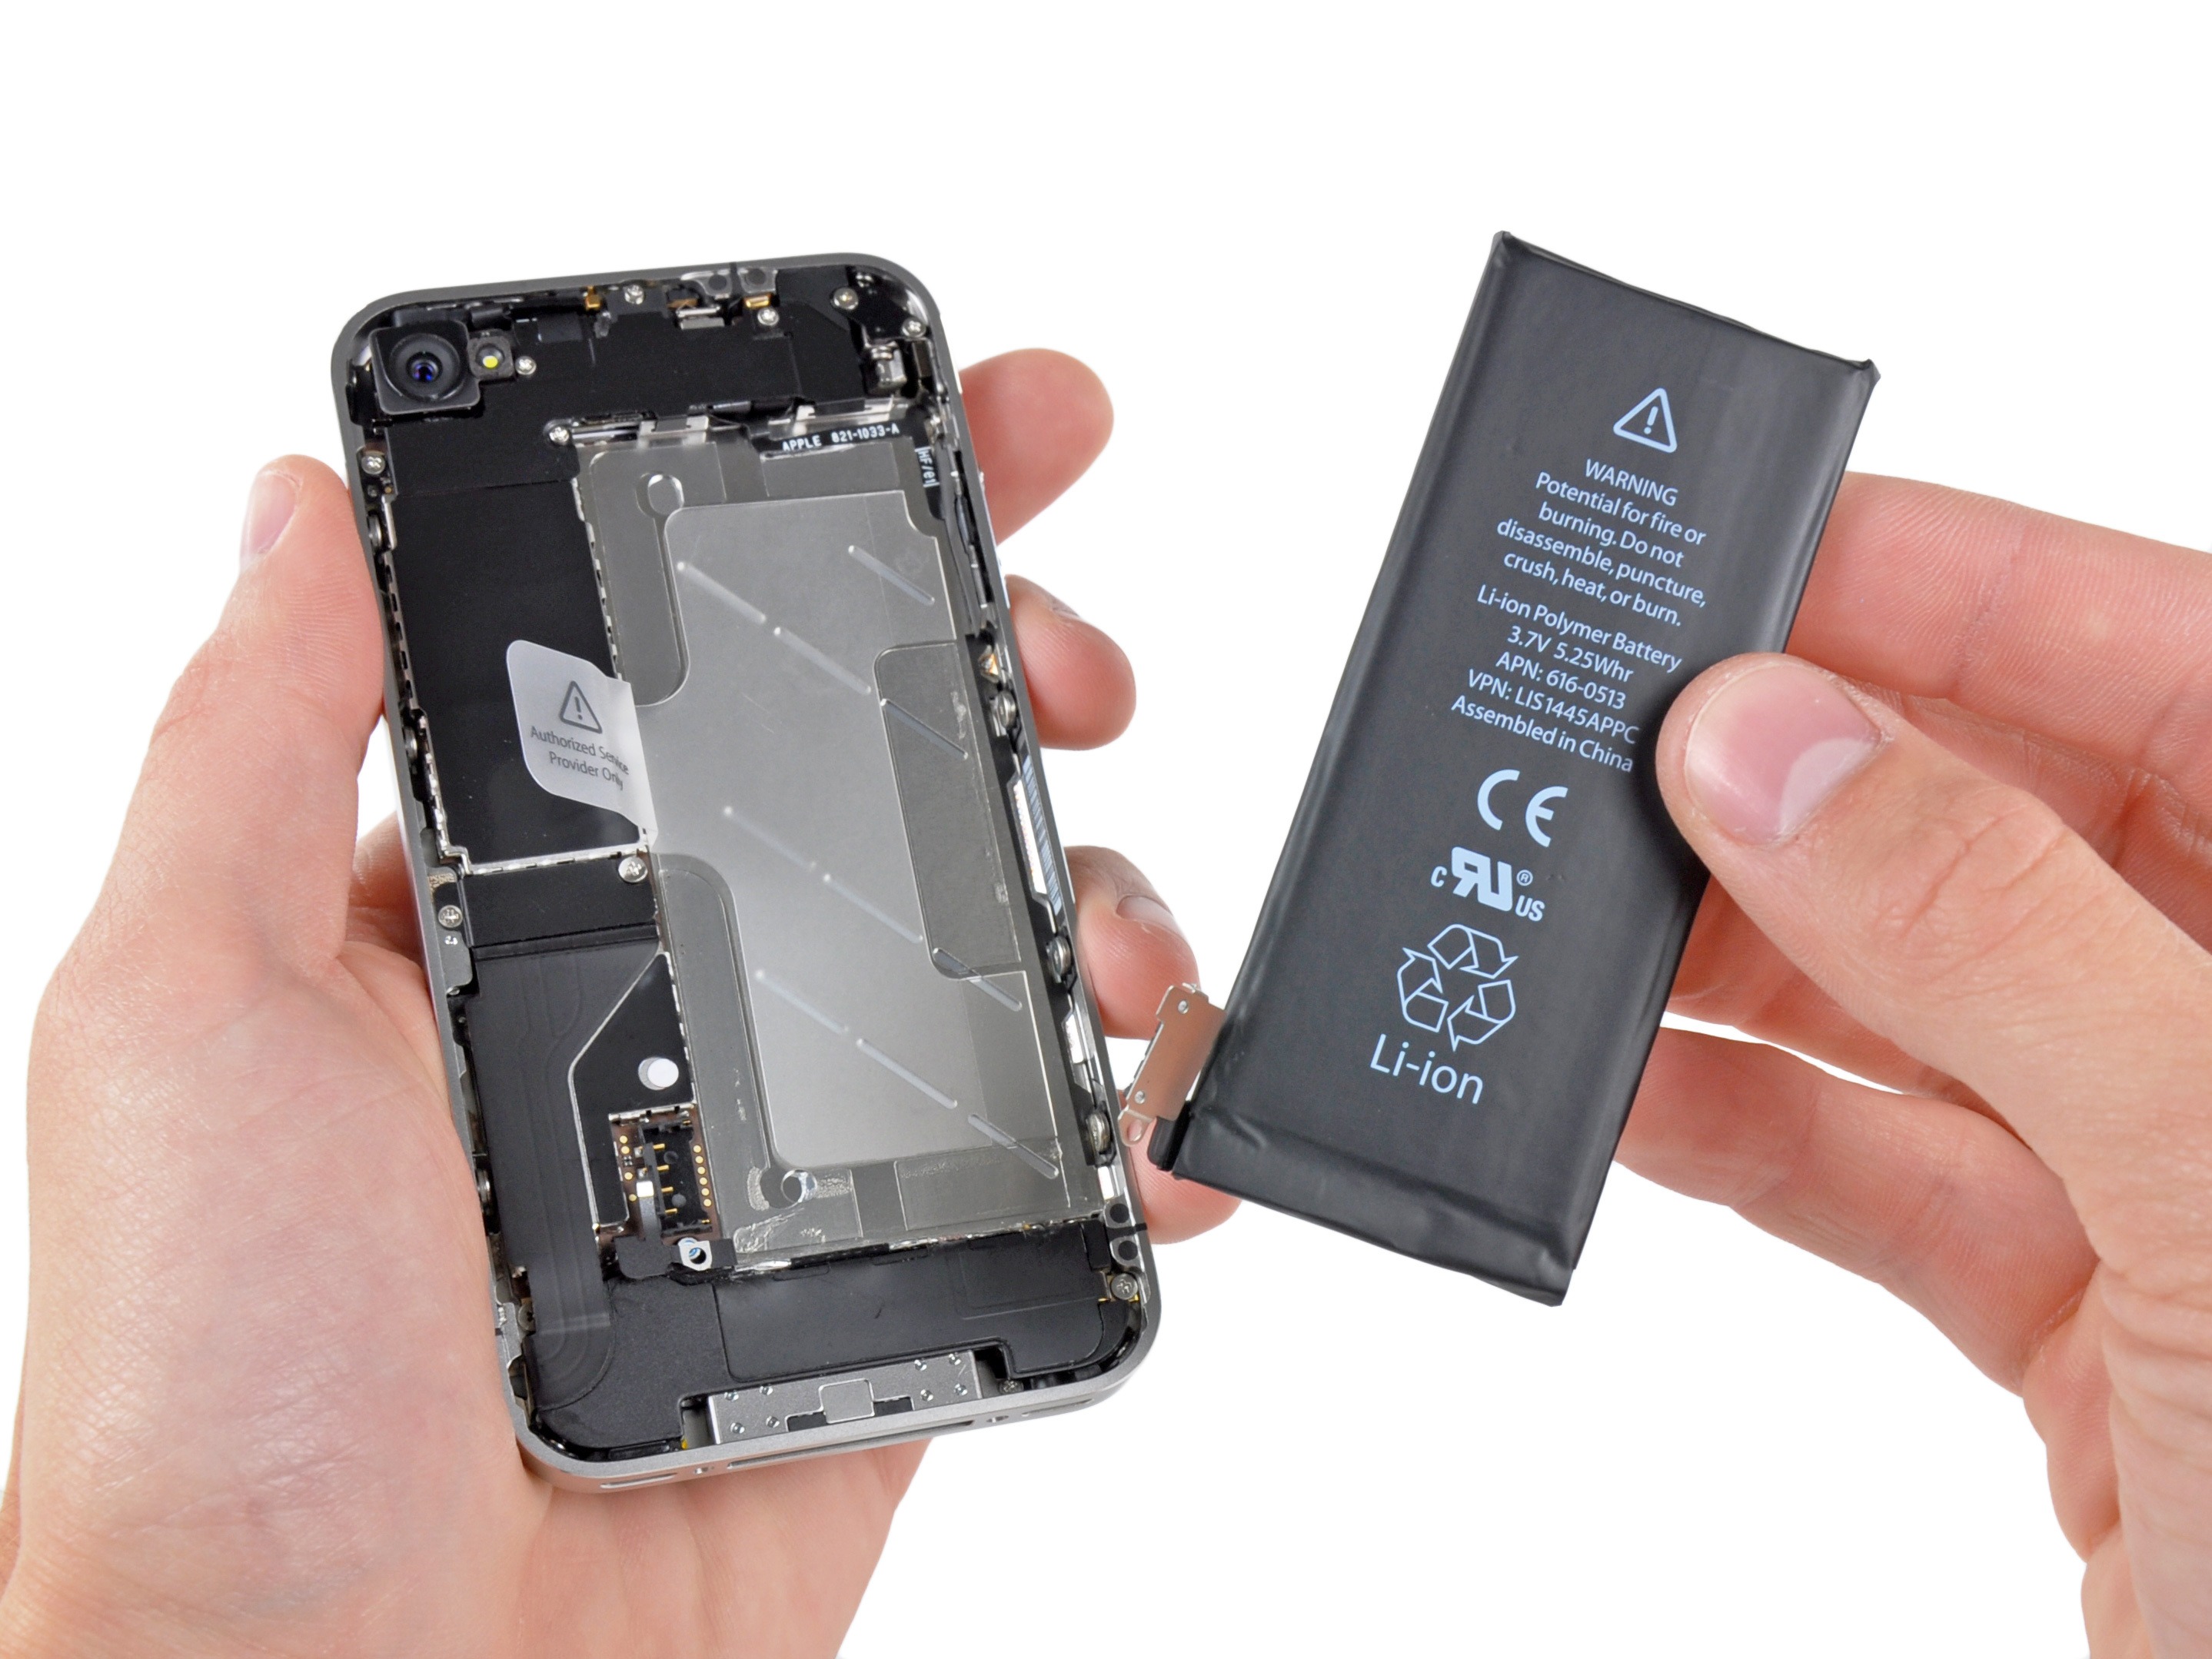 Cum inlocuiesc o baterie de iPhone 4?